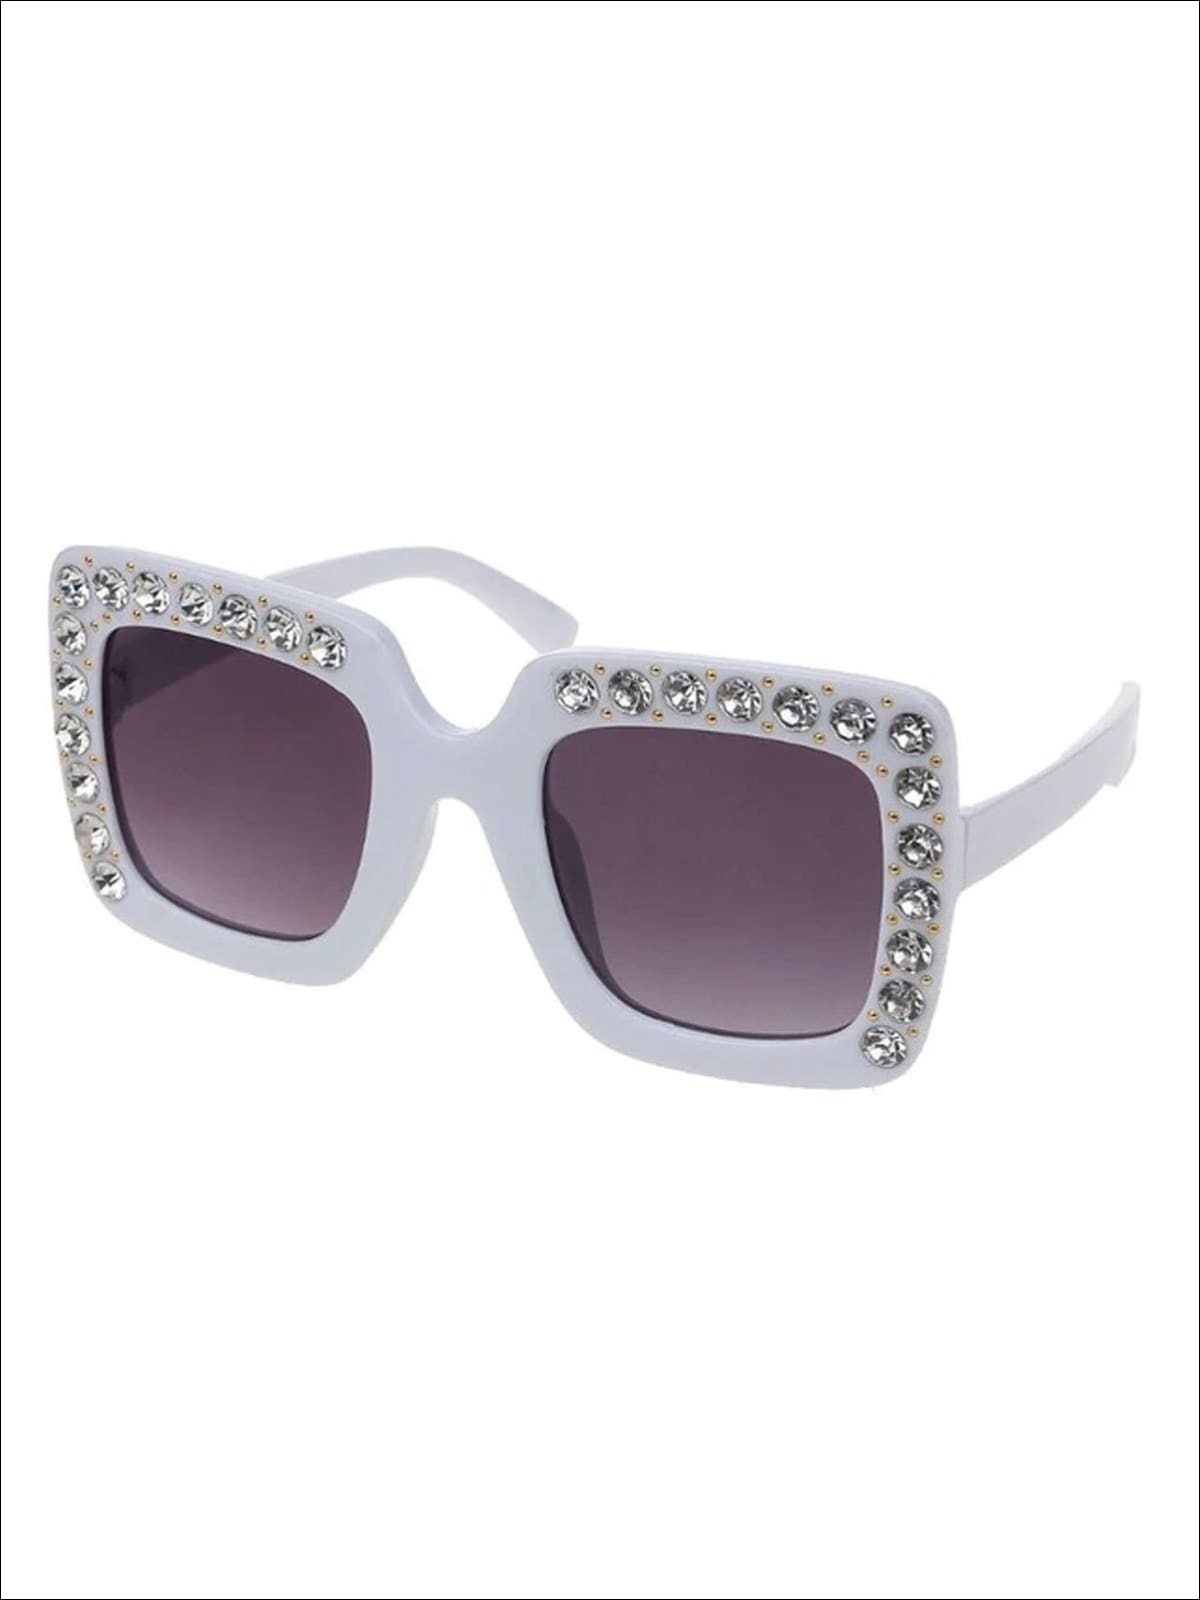 Girls Rhinestone Rimmed Sunglasses - White - Girls Accessories